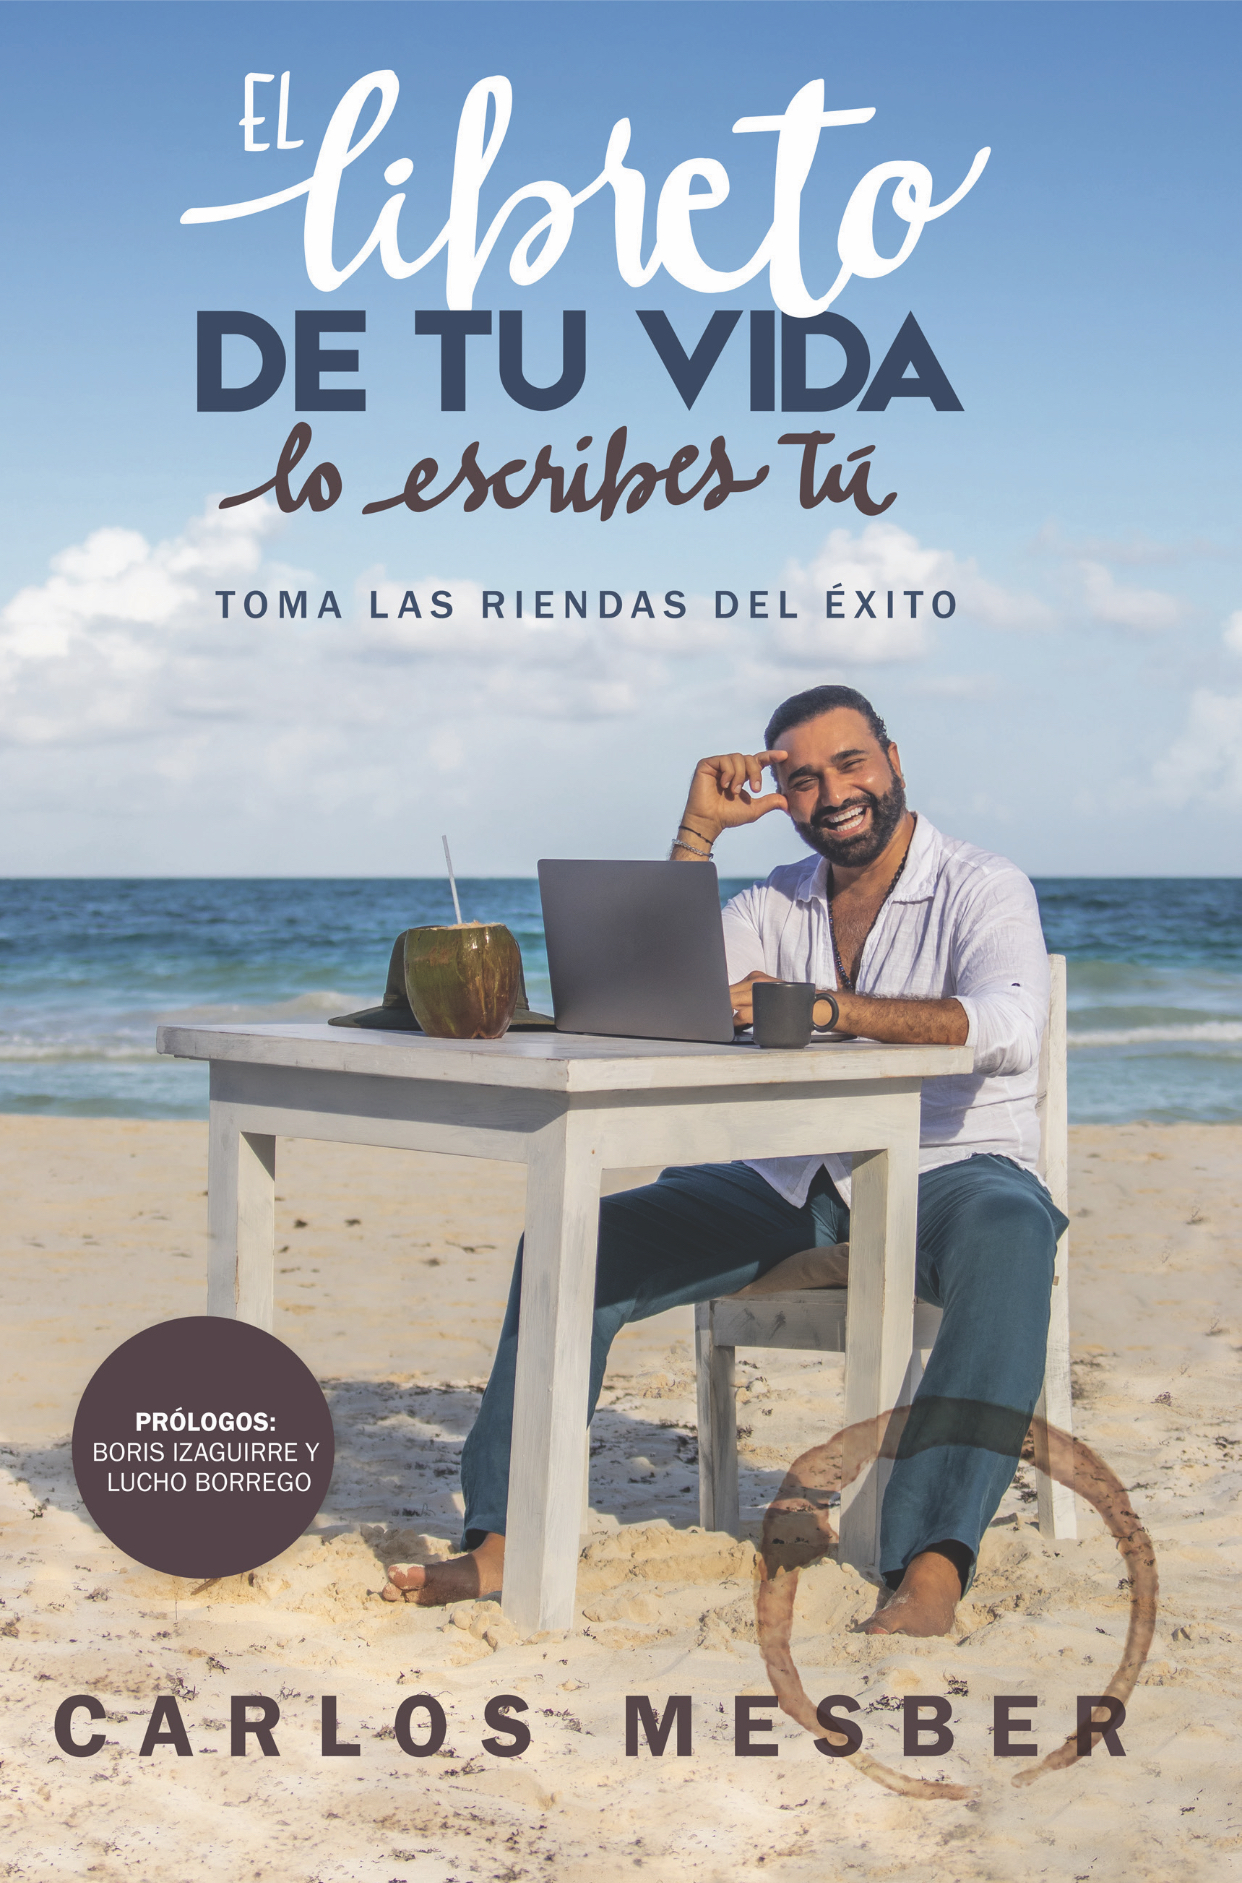 Carlos Mesber lanza su libro “El libreto de tu vida, lo escribes tú” con mensajes de positivismo, luz y motivación